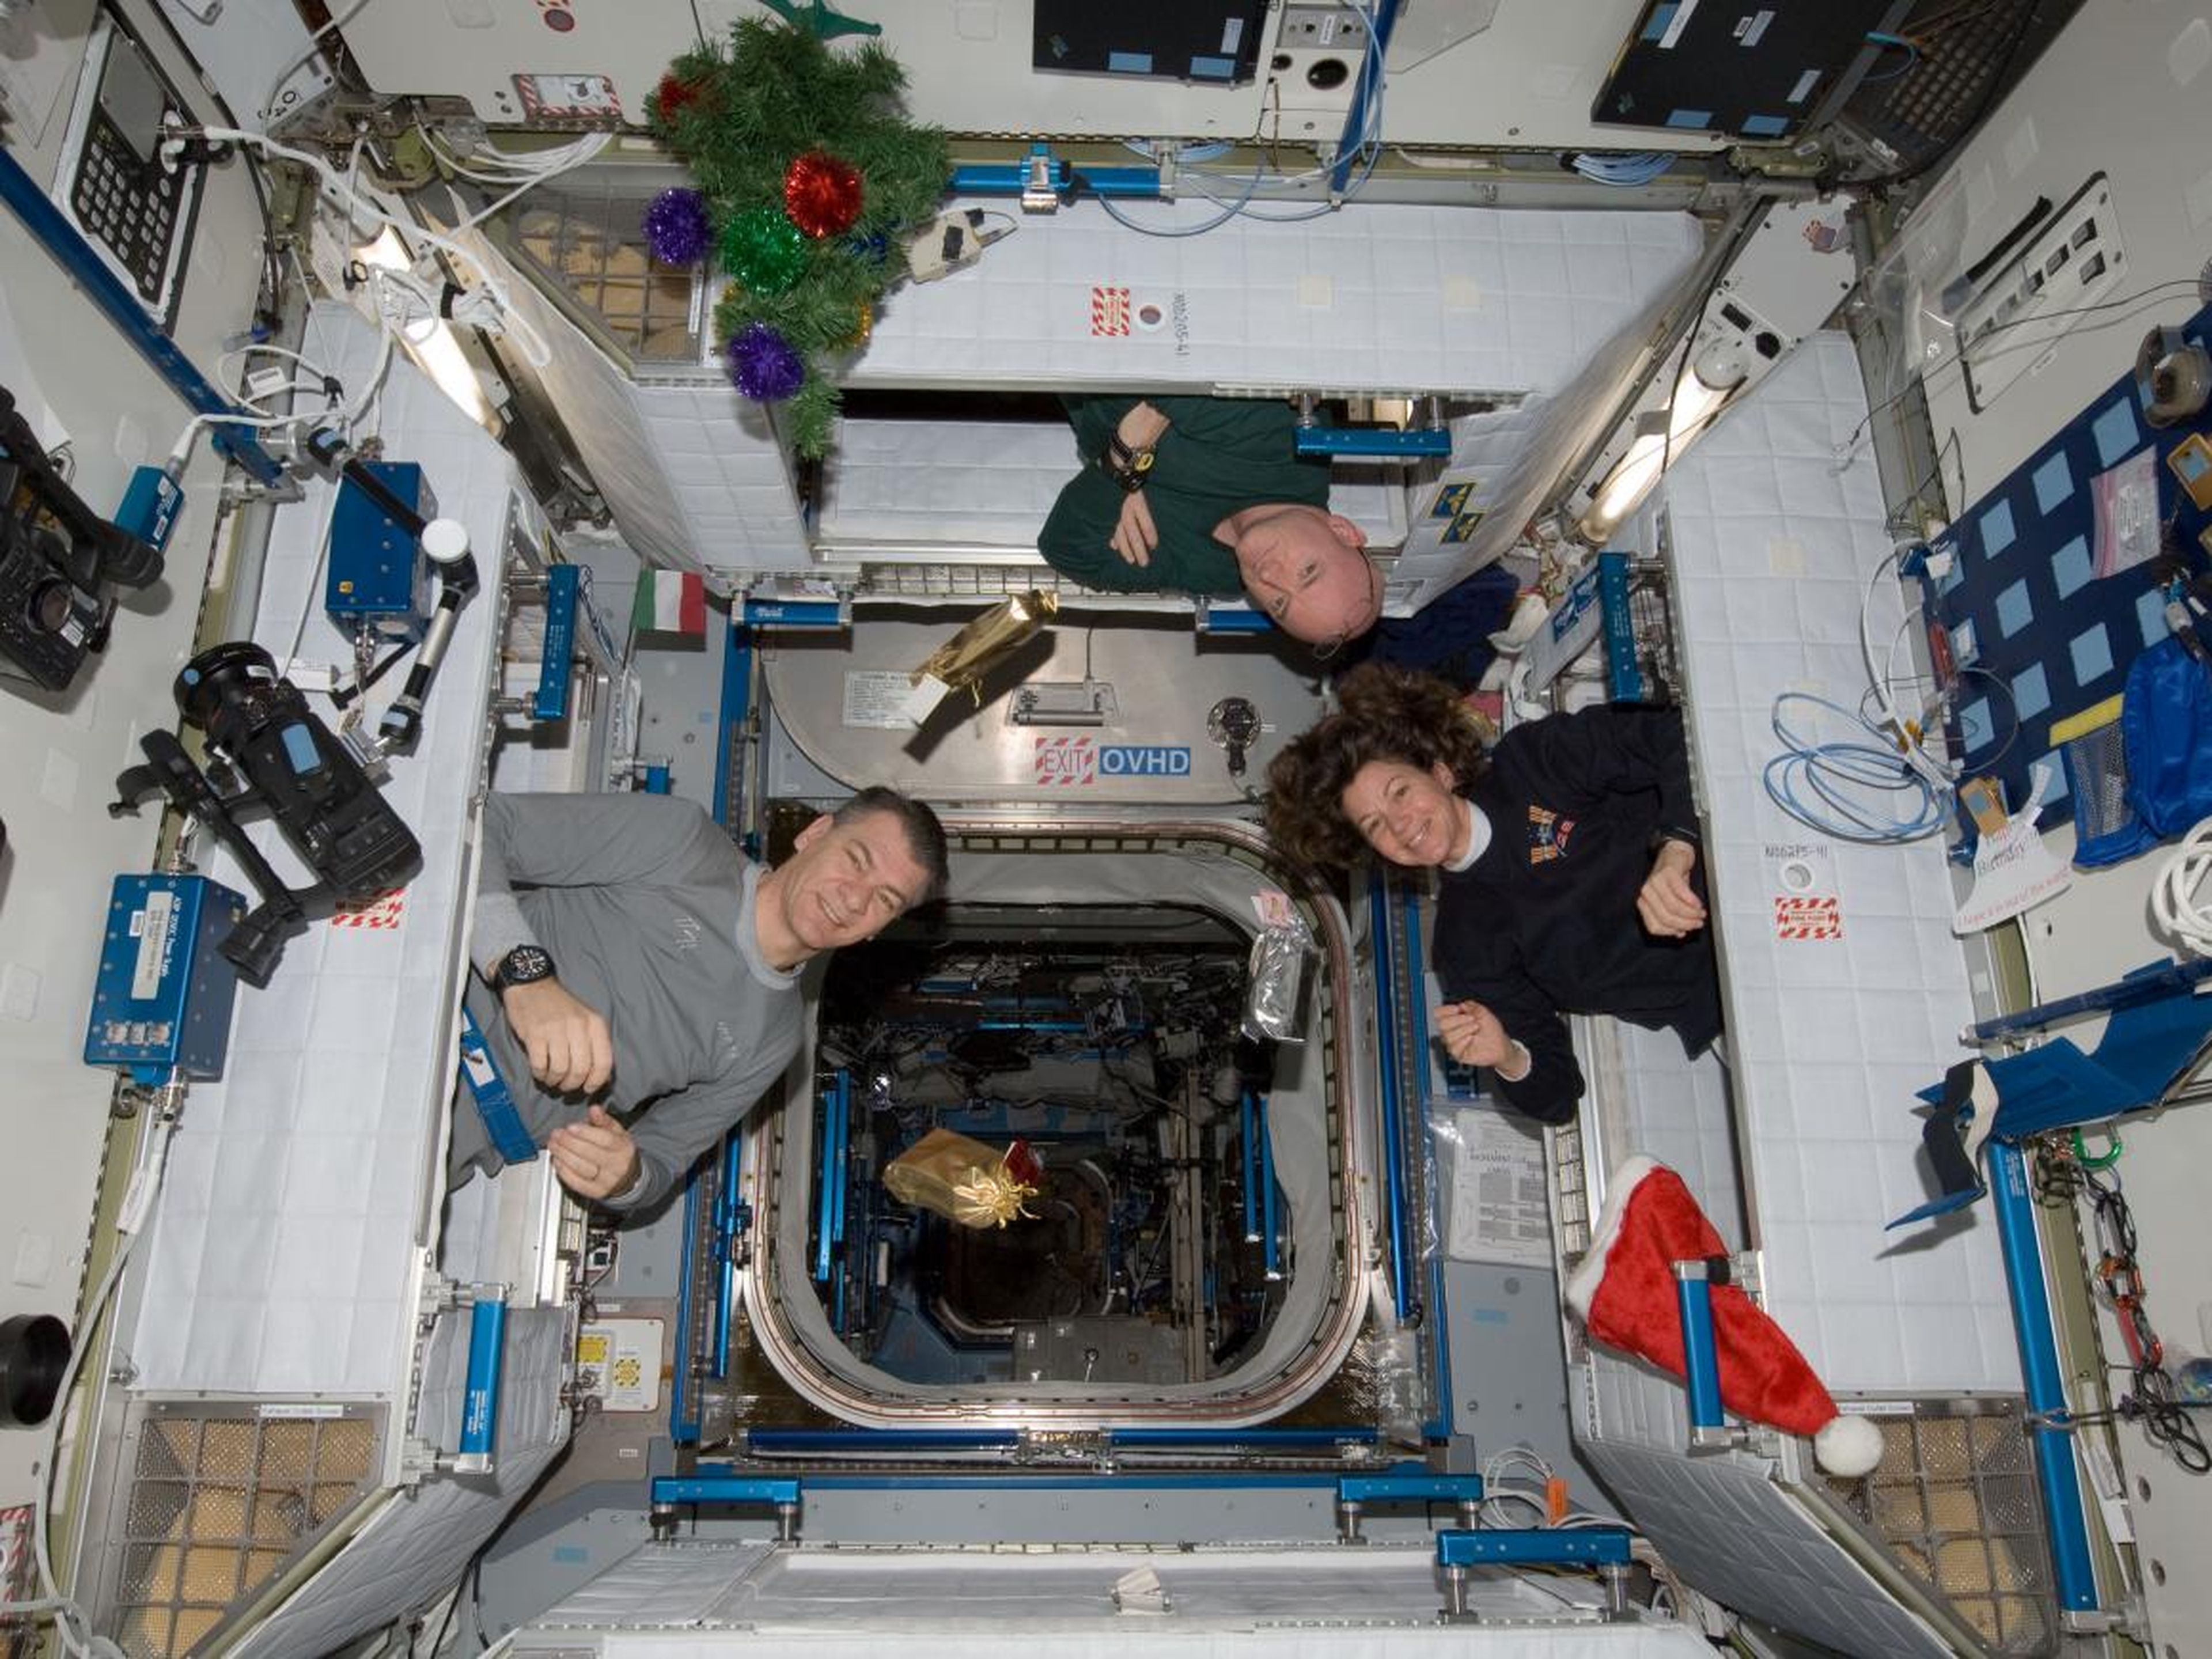 La mañana del día de Navidad de 2010 en la Estación Espacial Internacional. De izquierda a derecha: el astronauta de la Agencia Espacial Europea Paolo Nespoli, el astronauta de la NASA Scott Kelly, y la astronauta de la NASA Cady Coleman.